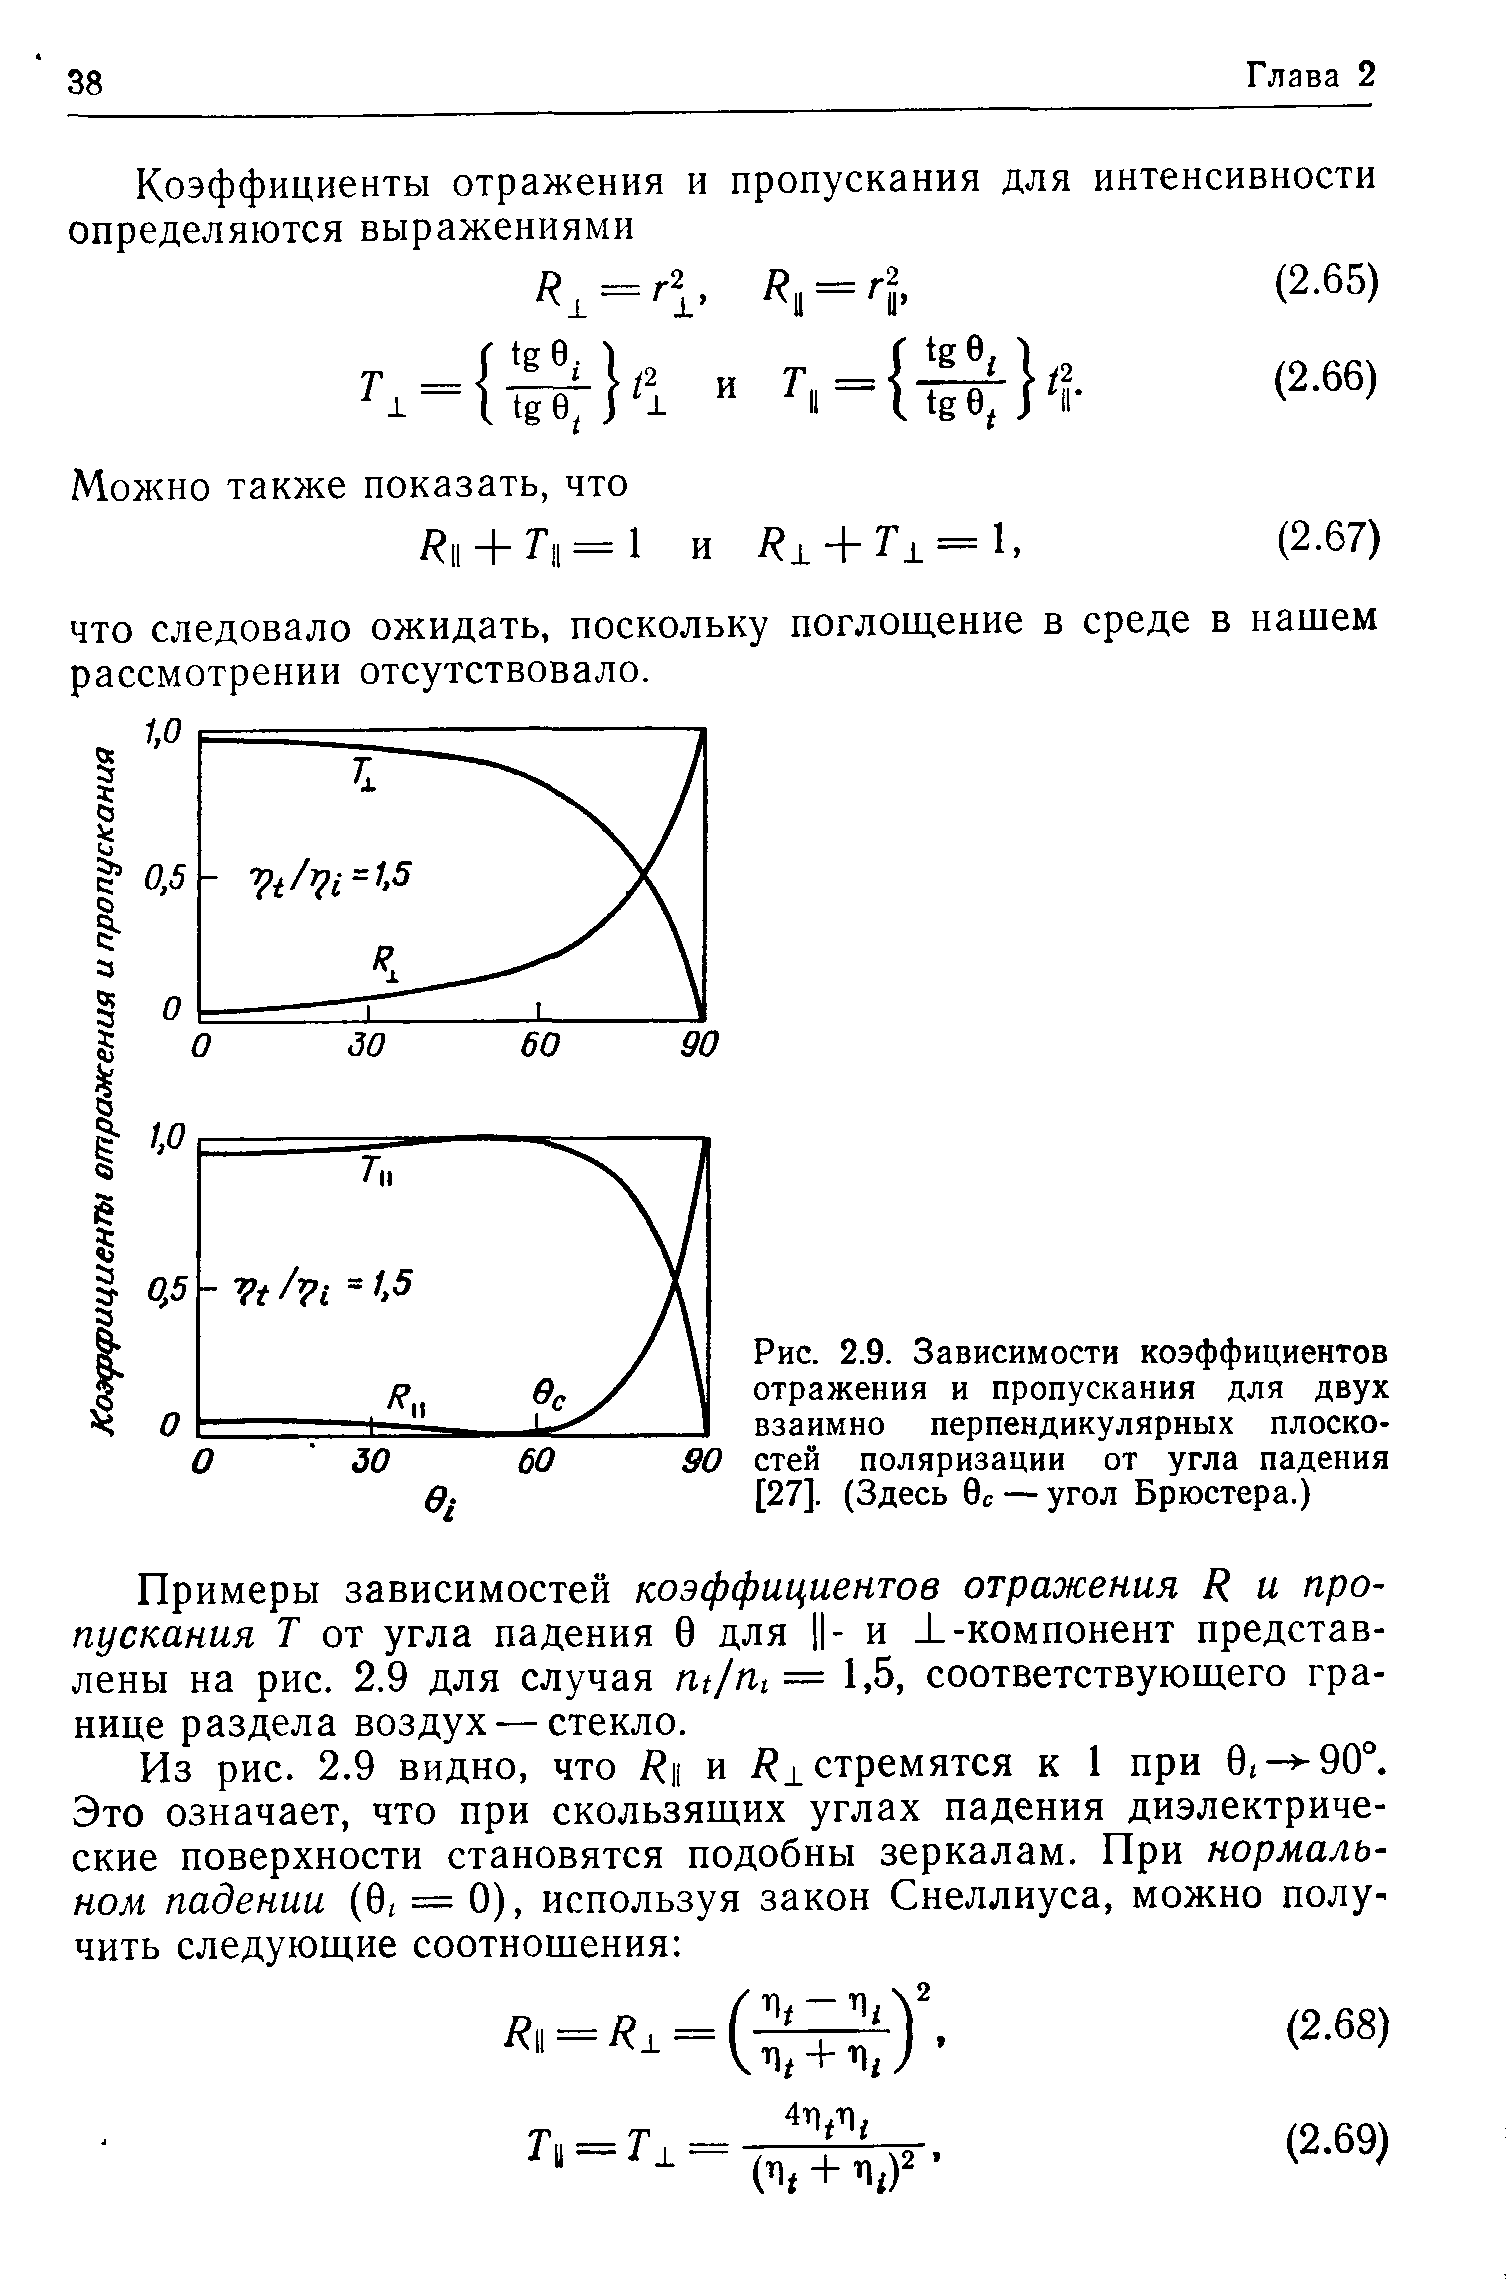 Рис. 2.9. Зависимости коэффициентов отражения и пропускания для двух взаимно перпендикулярных плоскостей поляризации от угла падения [27]. (Здесь 0с —угол Брюстера.)
